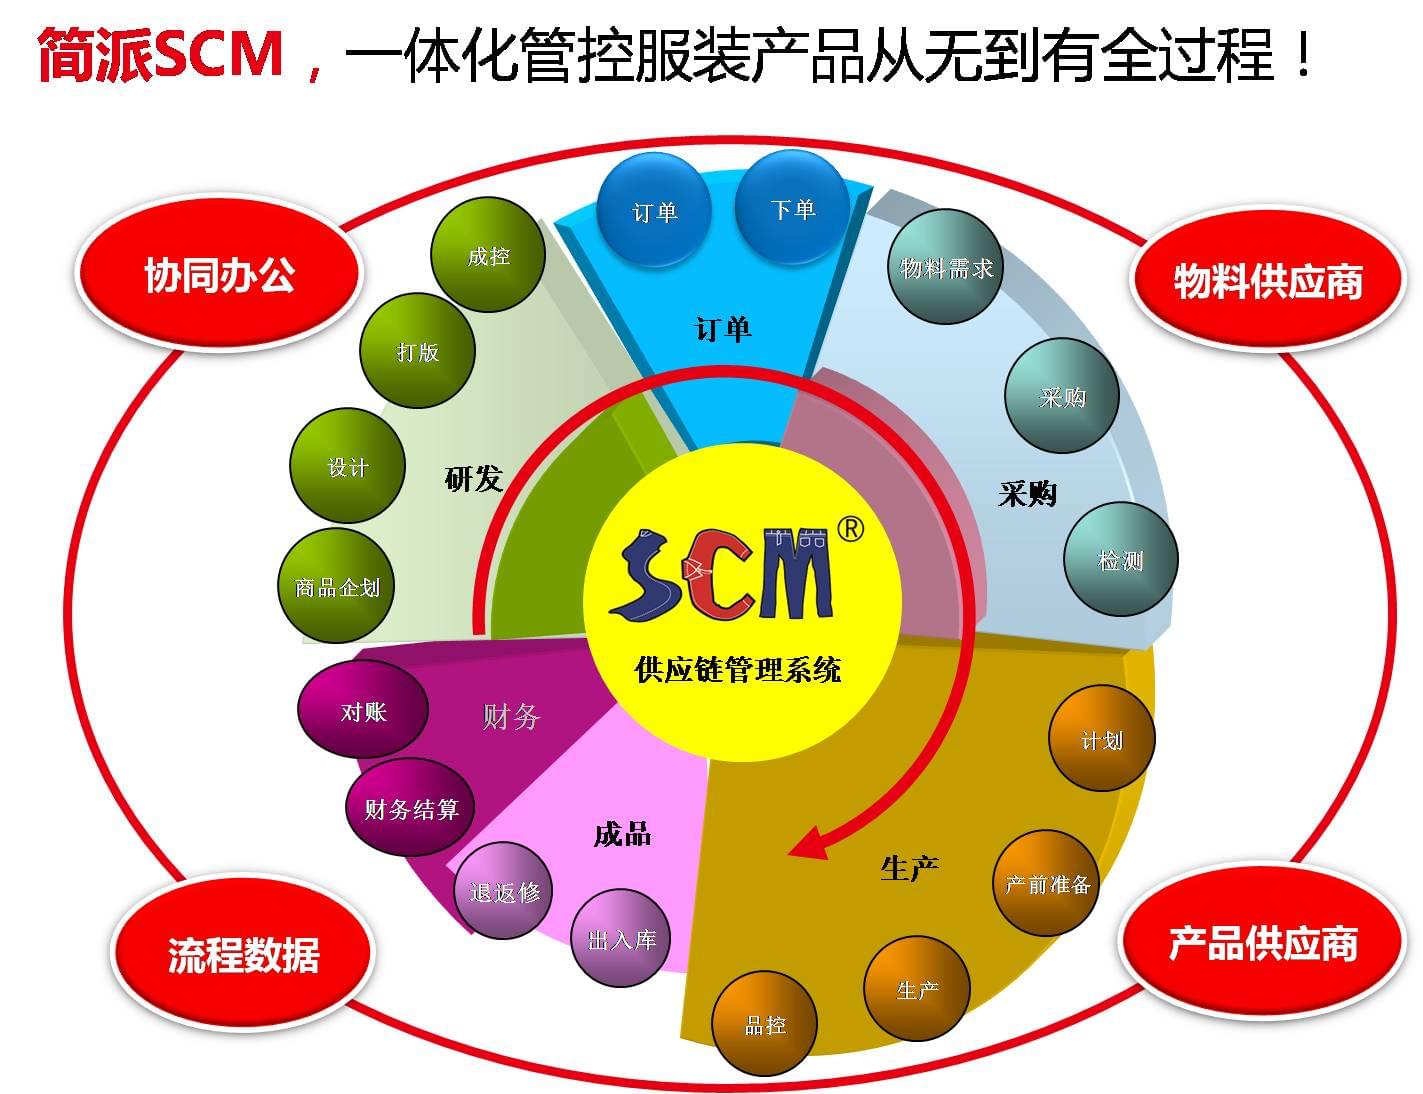 钰真,简派SCM,服装供应链管理系统,SCM供应链管理系统,广州简派软件科技有限公司